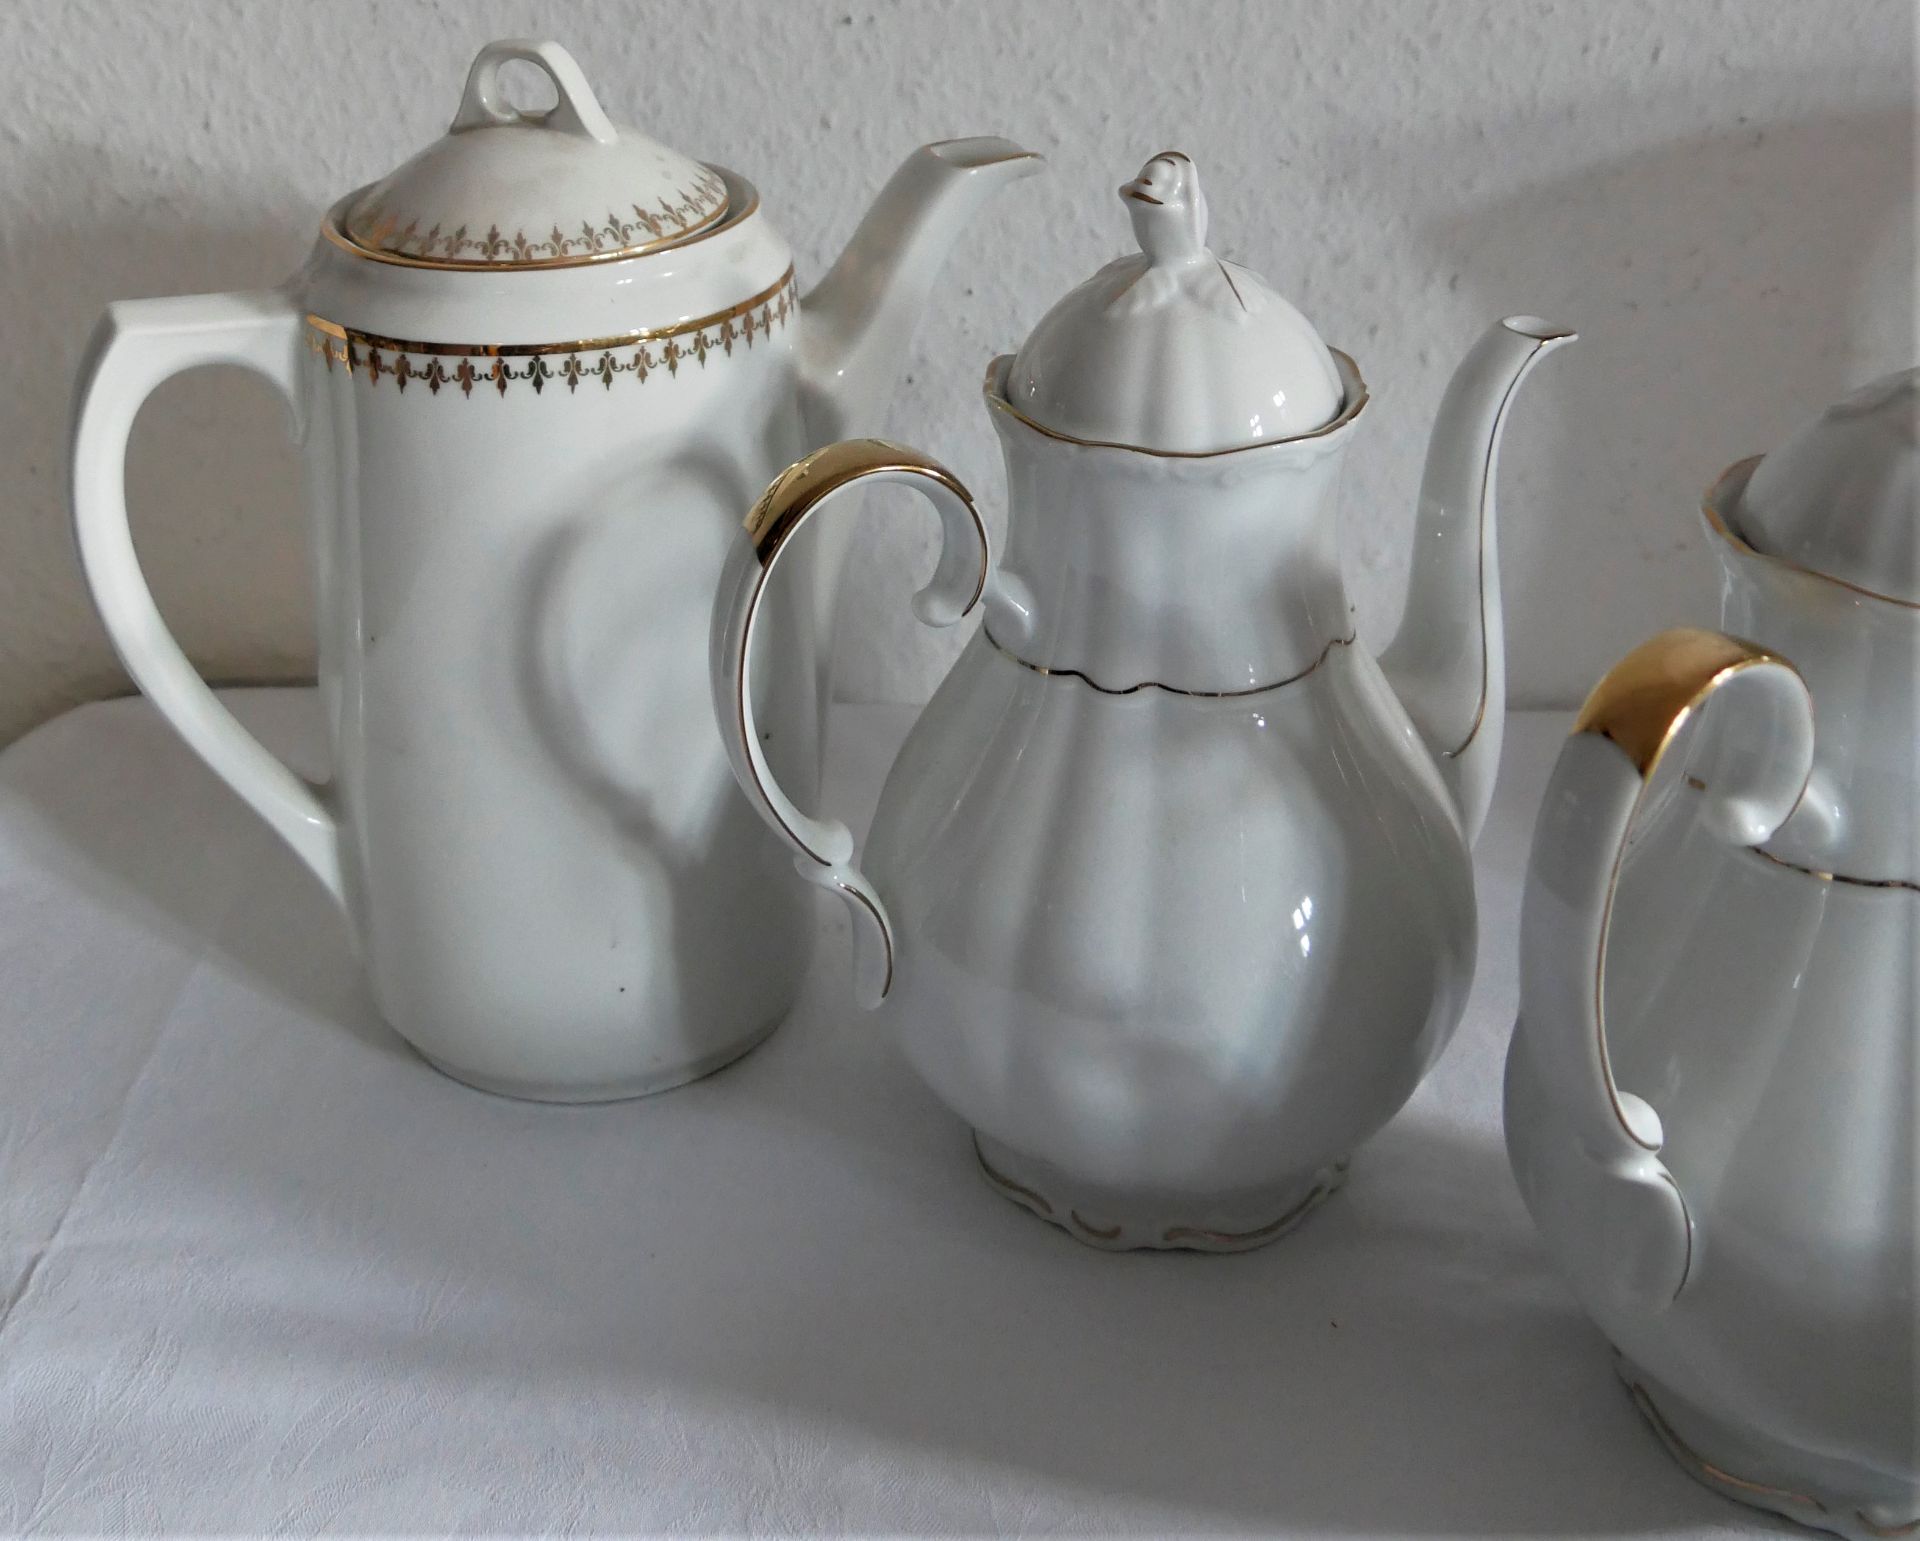 5 Teile Porzellan, dabei 3 Kaffeekannen, 1 Vase sowie 1 Schildkröte. Teilweise gemarkt. - Image 2 of 4